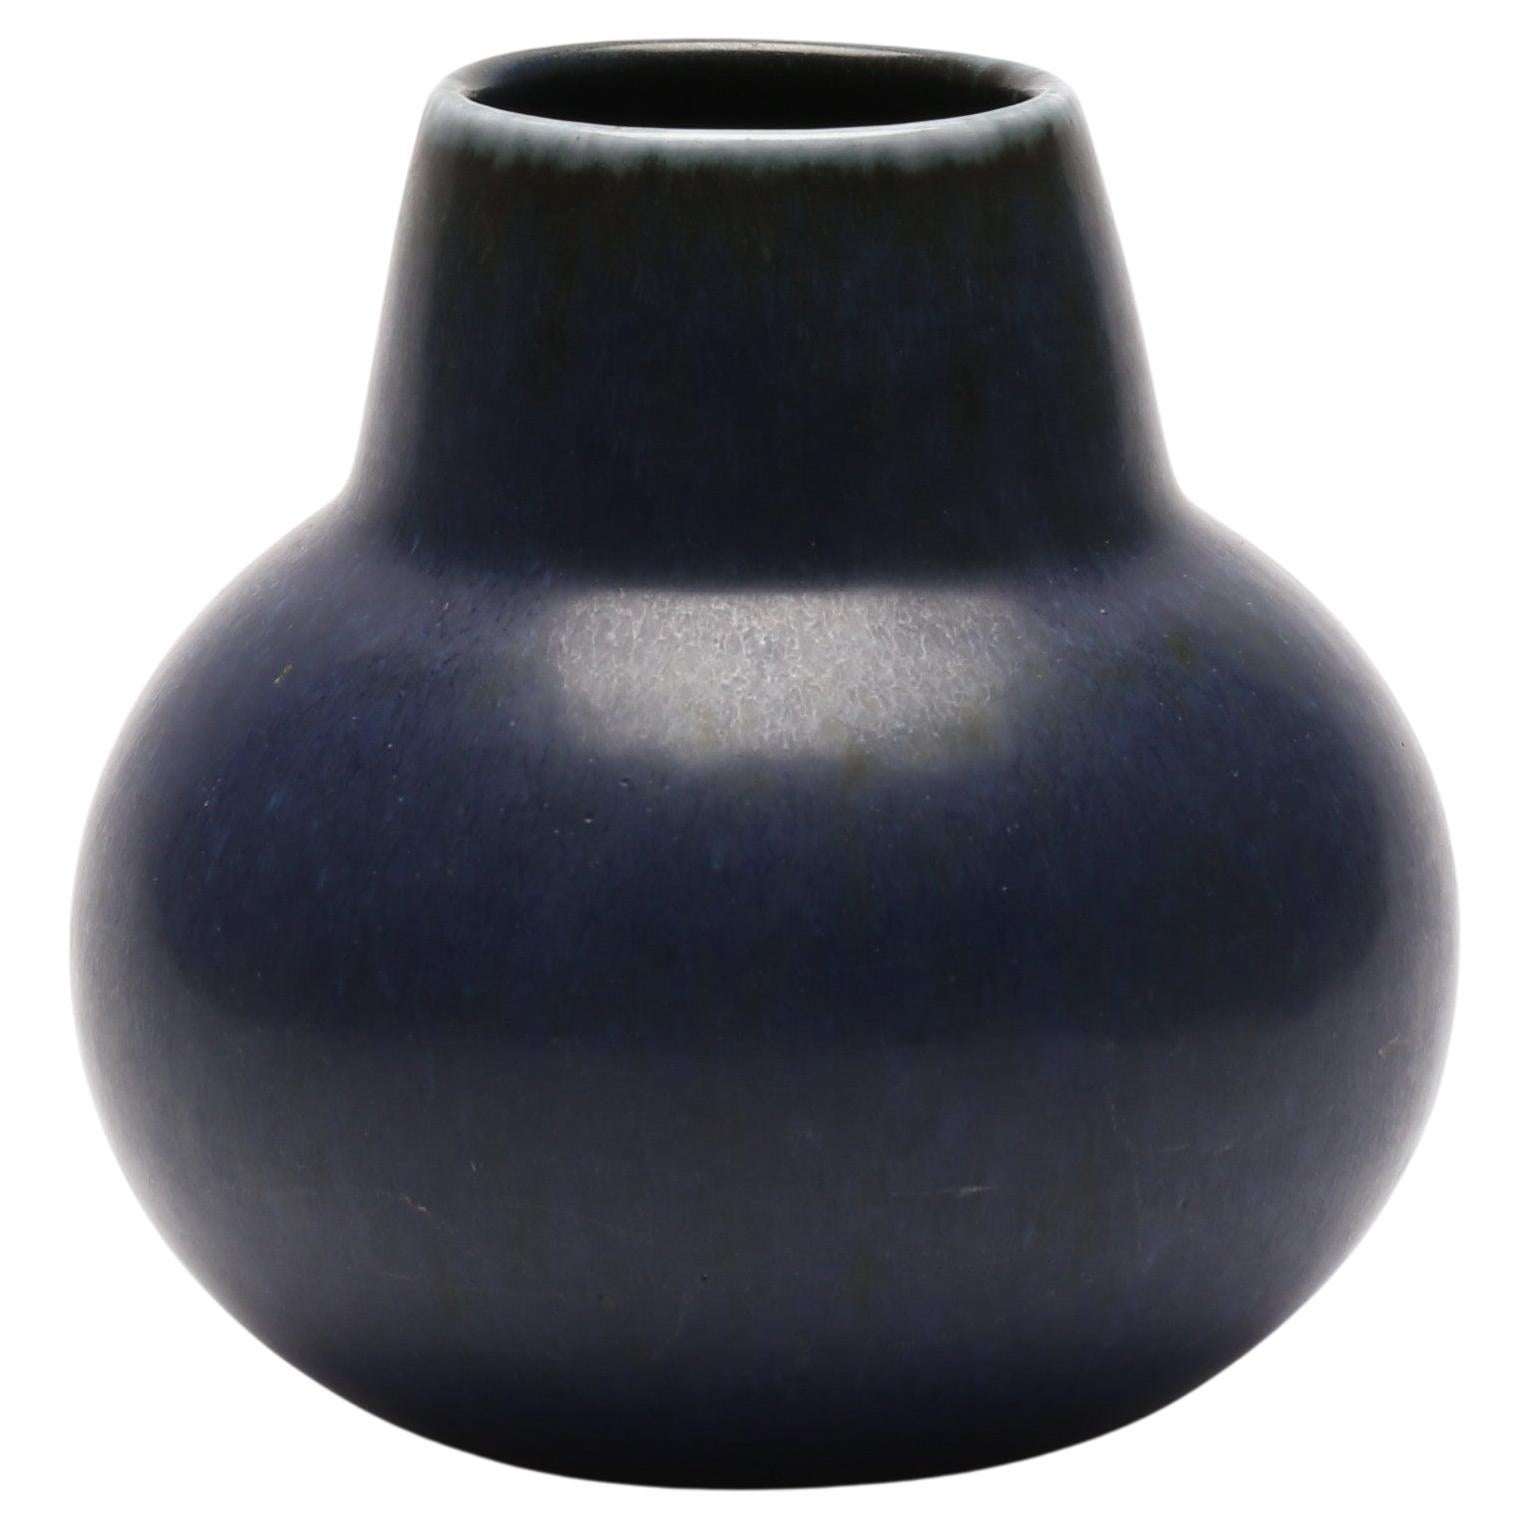 Carl-Harry Stålhane Ceramic Dark Blue Glaze Vase, 1950s